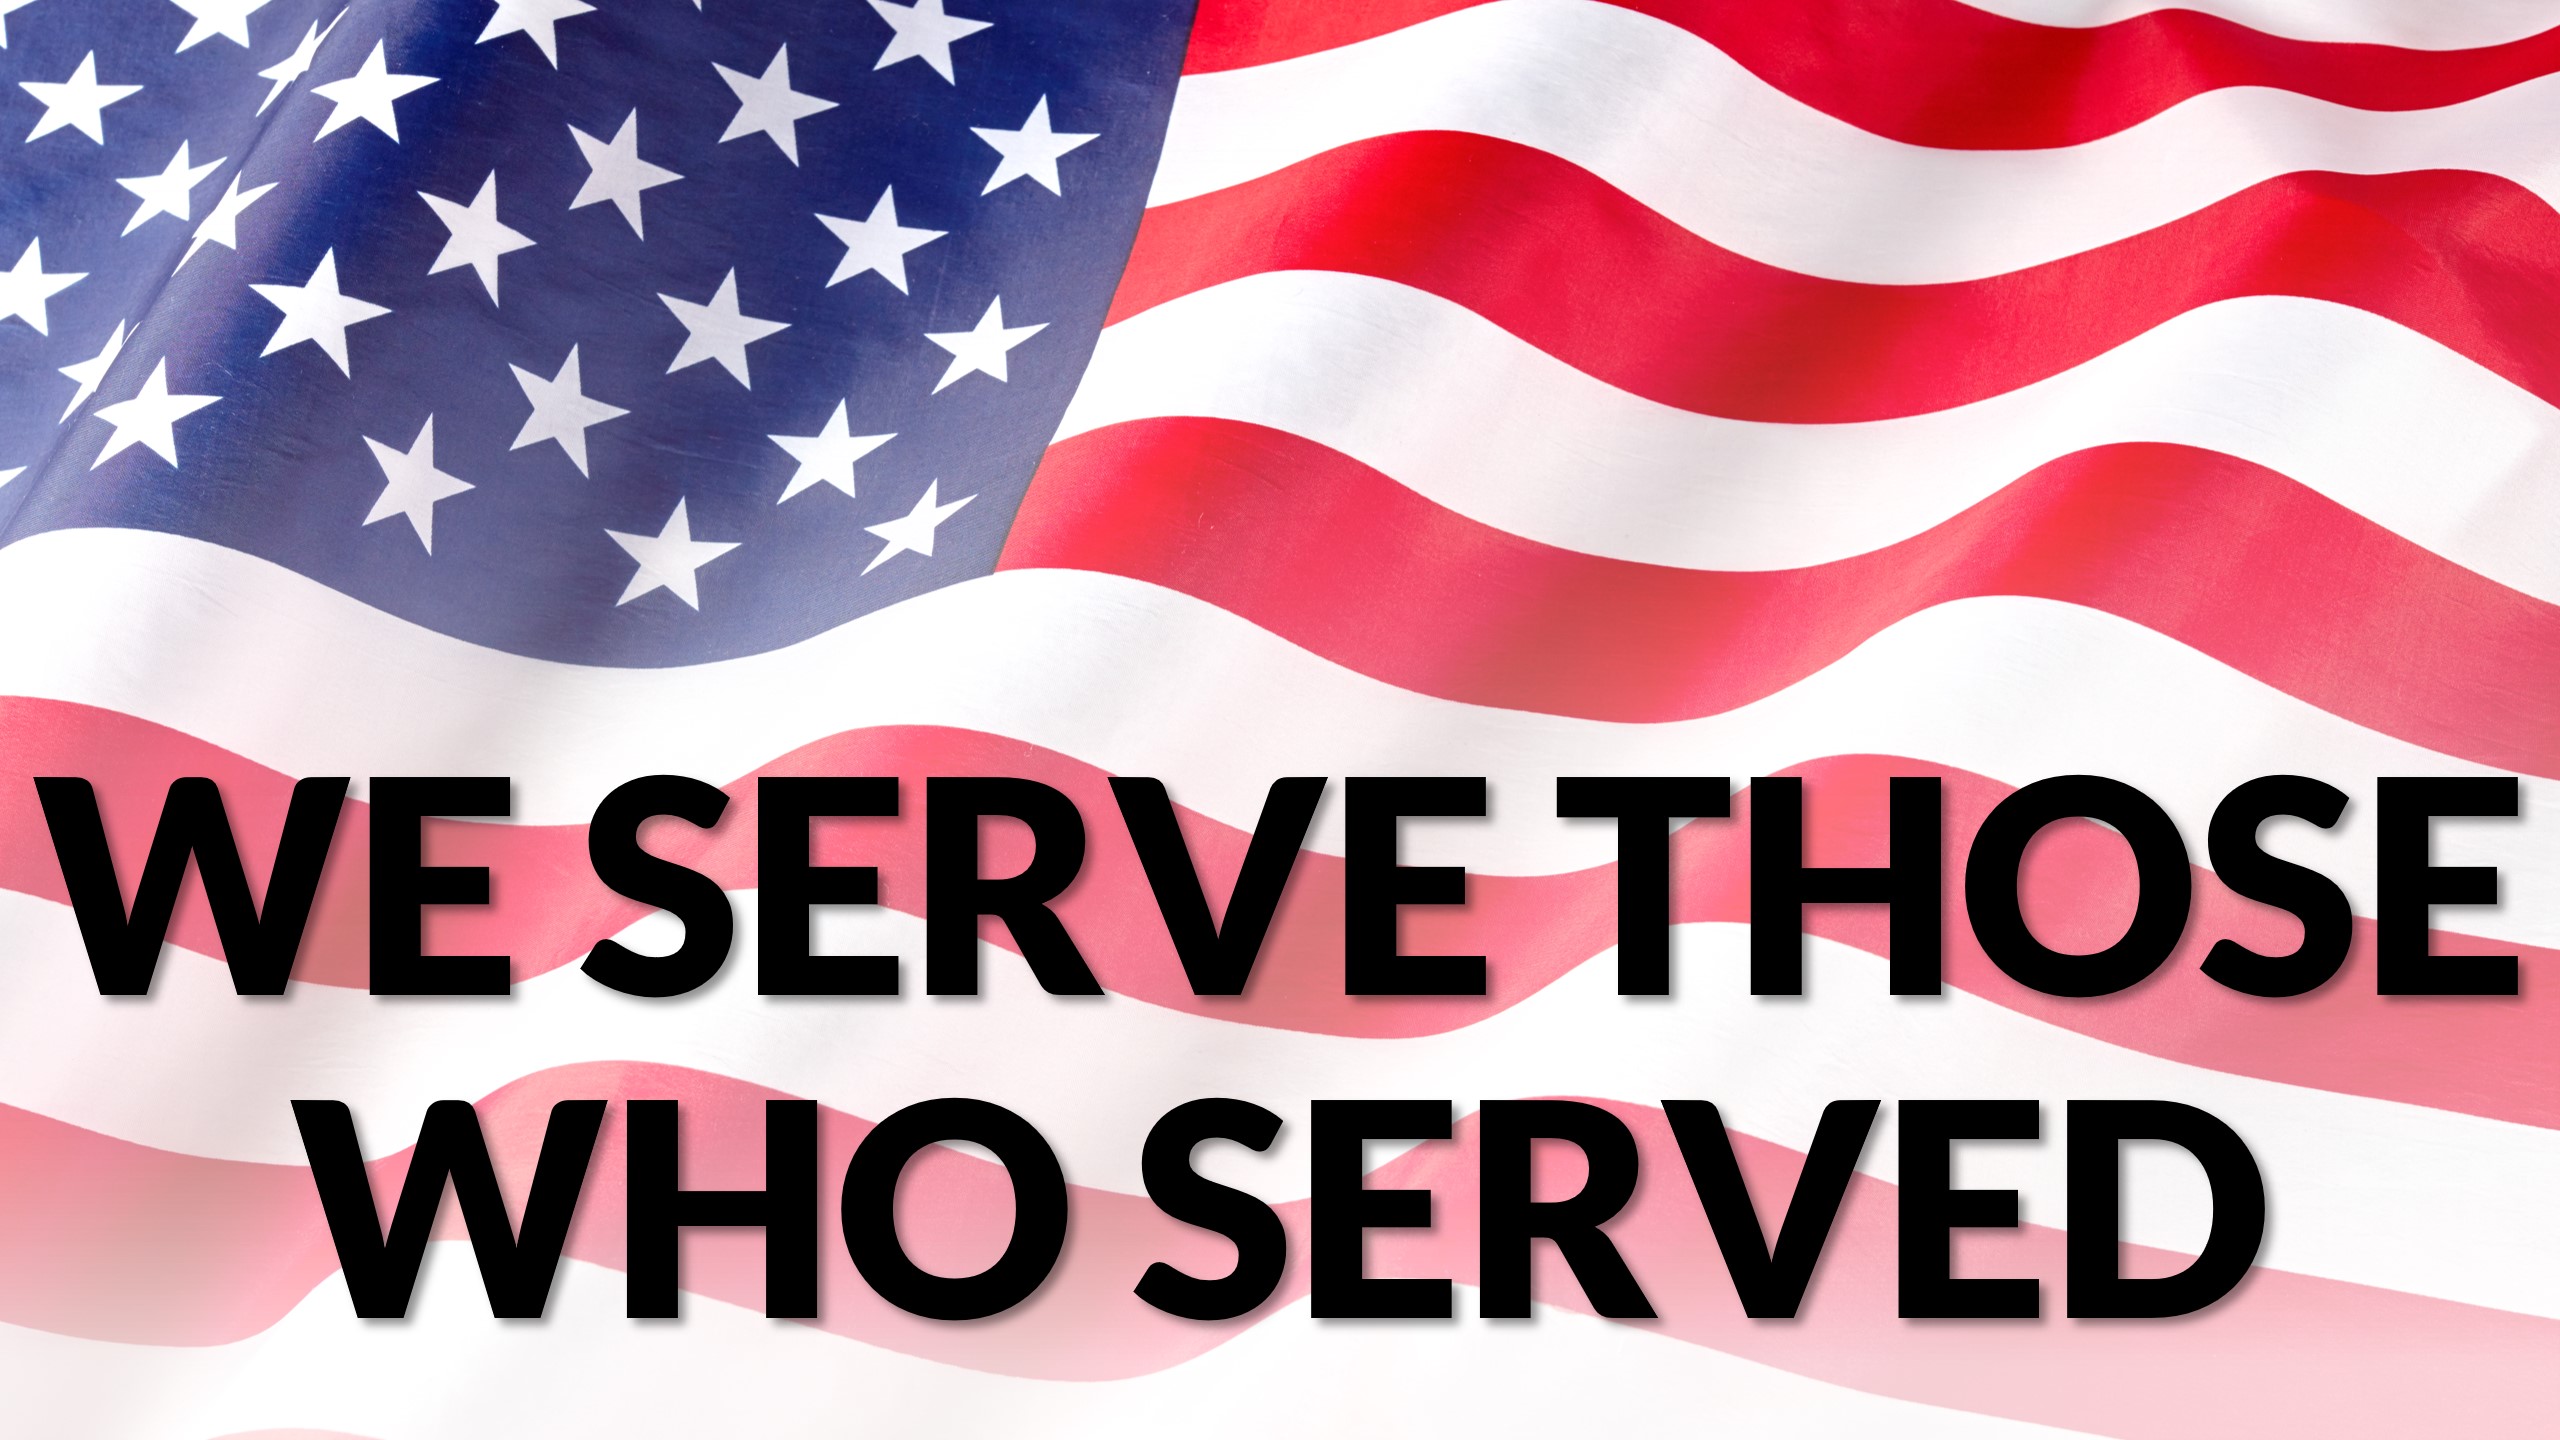 We Serve Those Who Served